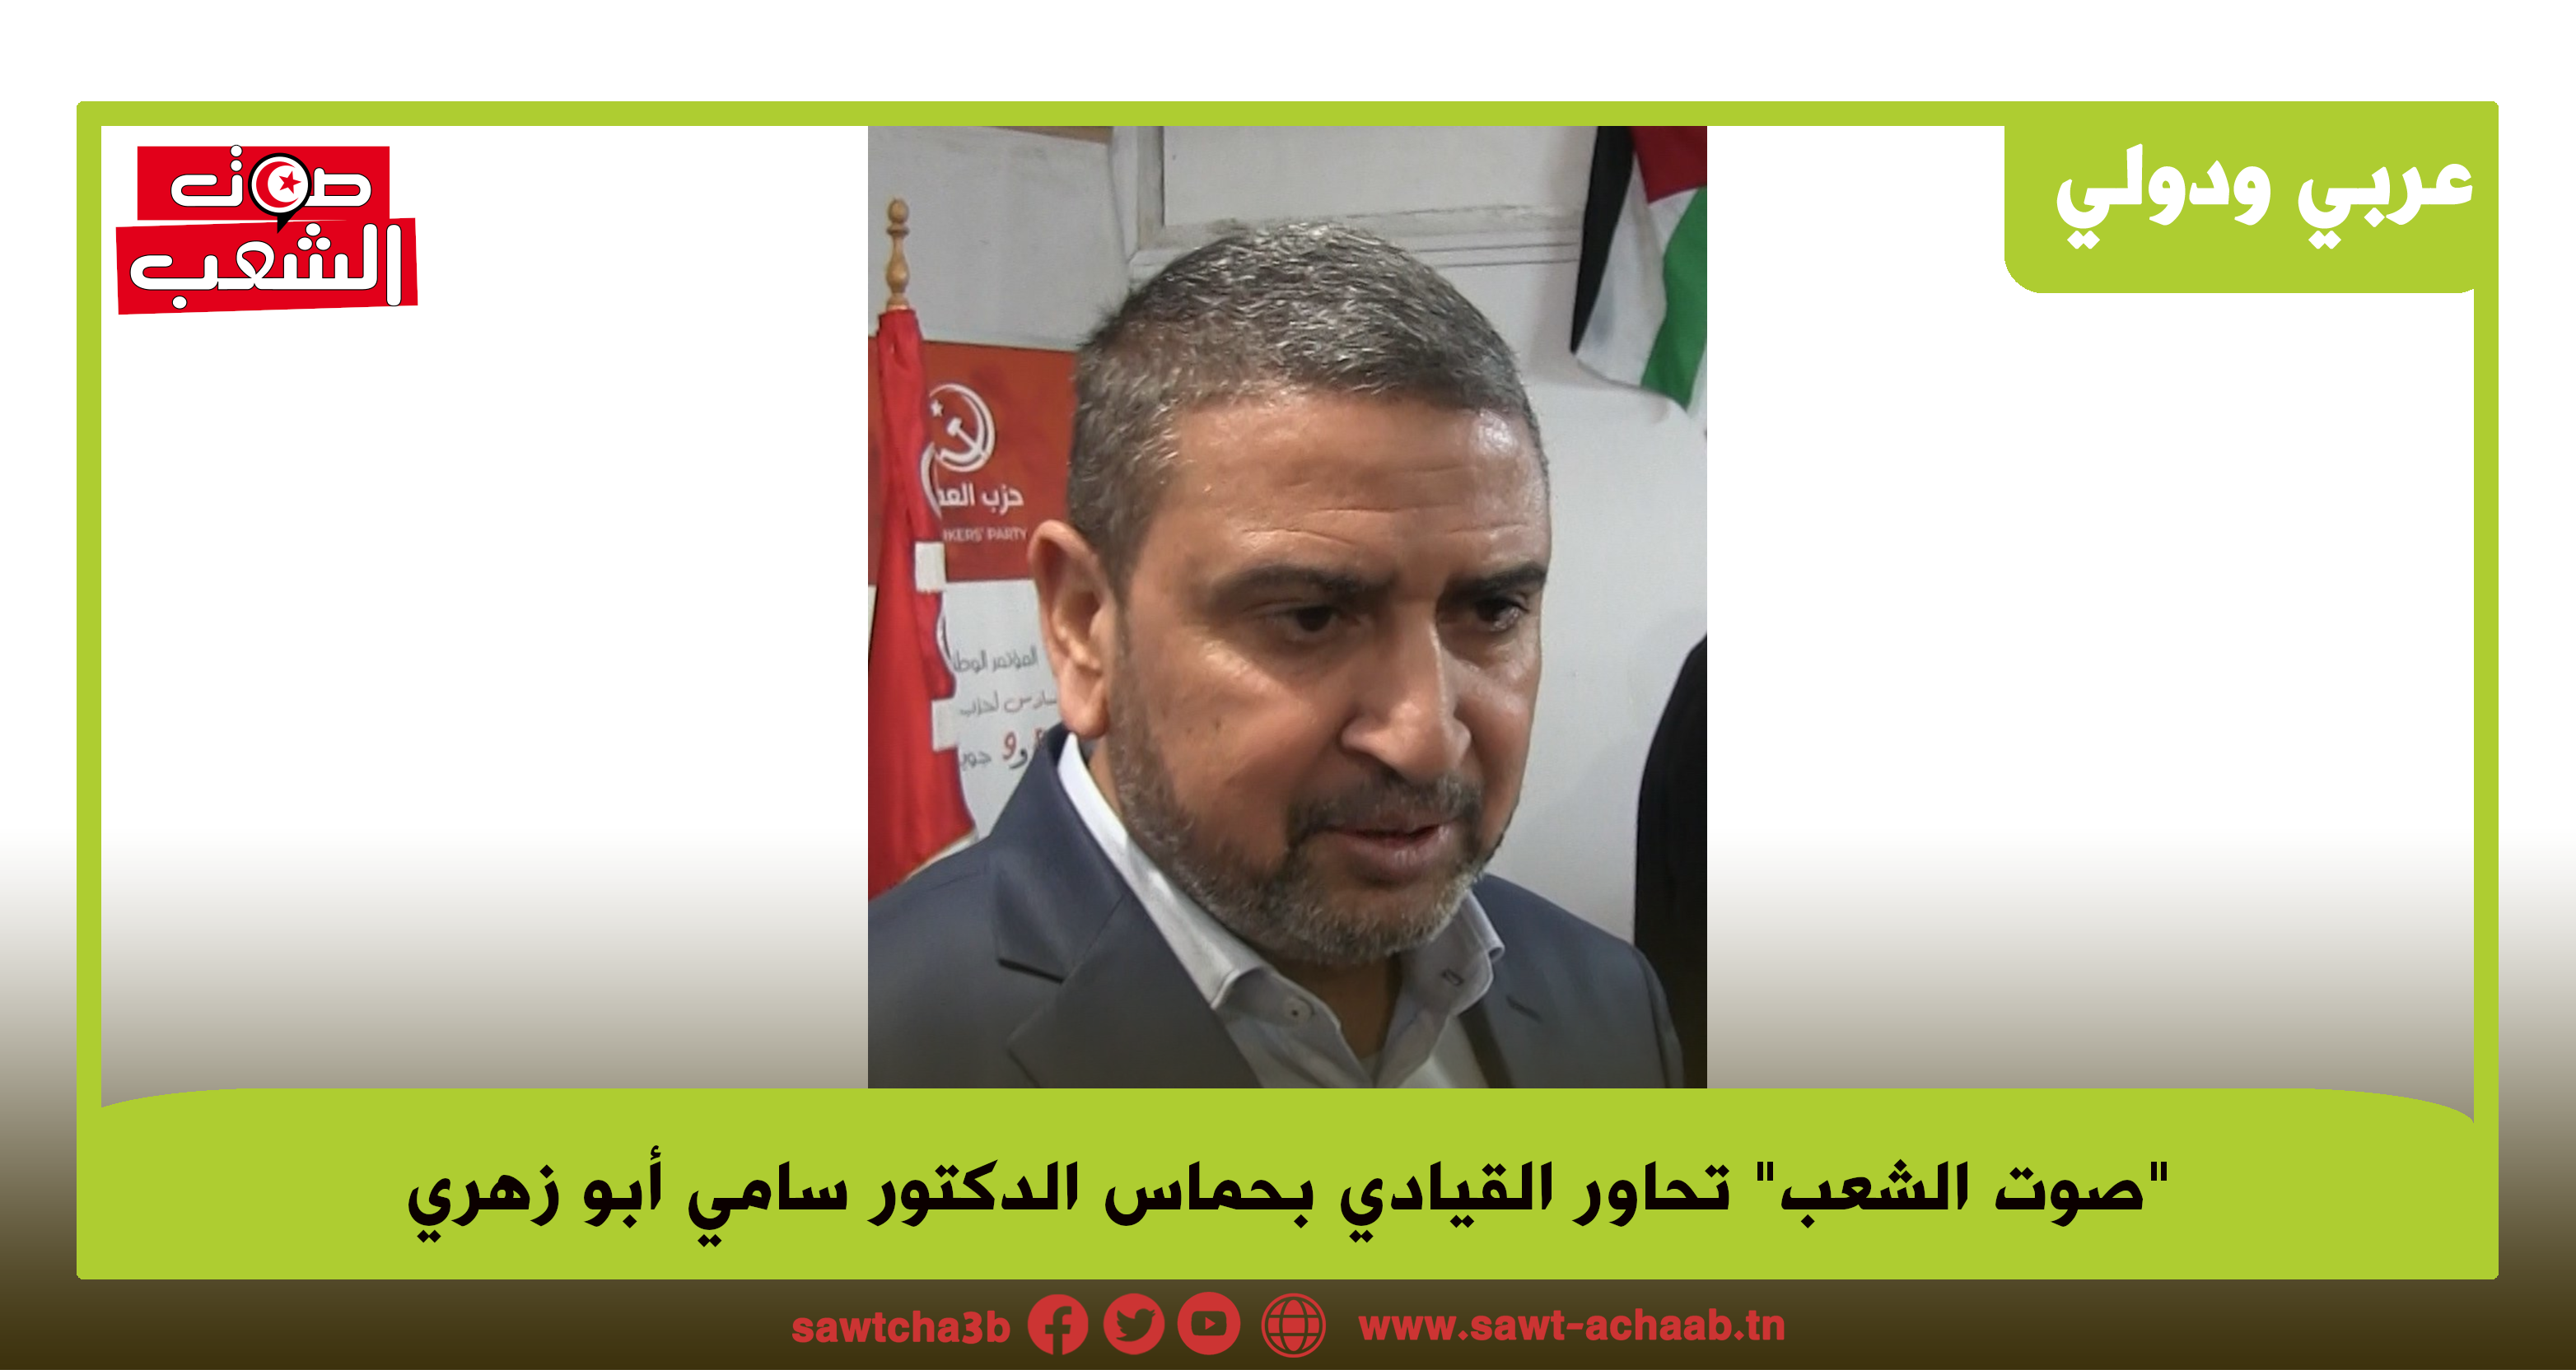 الدكتور سامي أبو زهري القيادي بحماس لـ”صوت الشعب”: